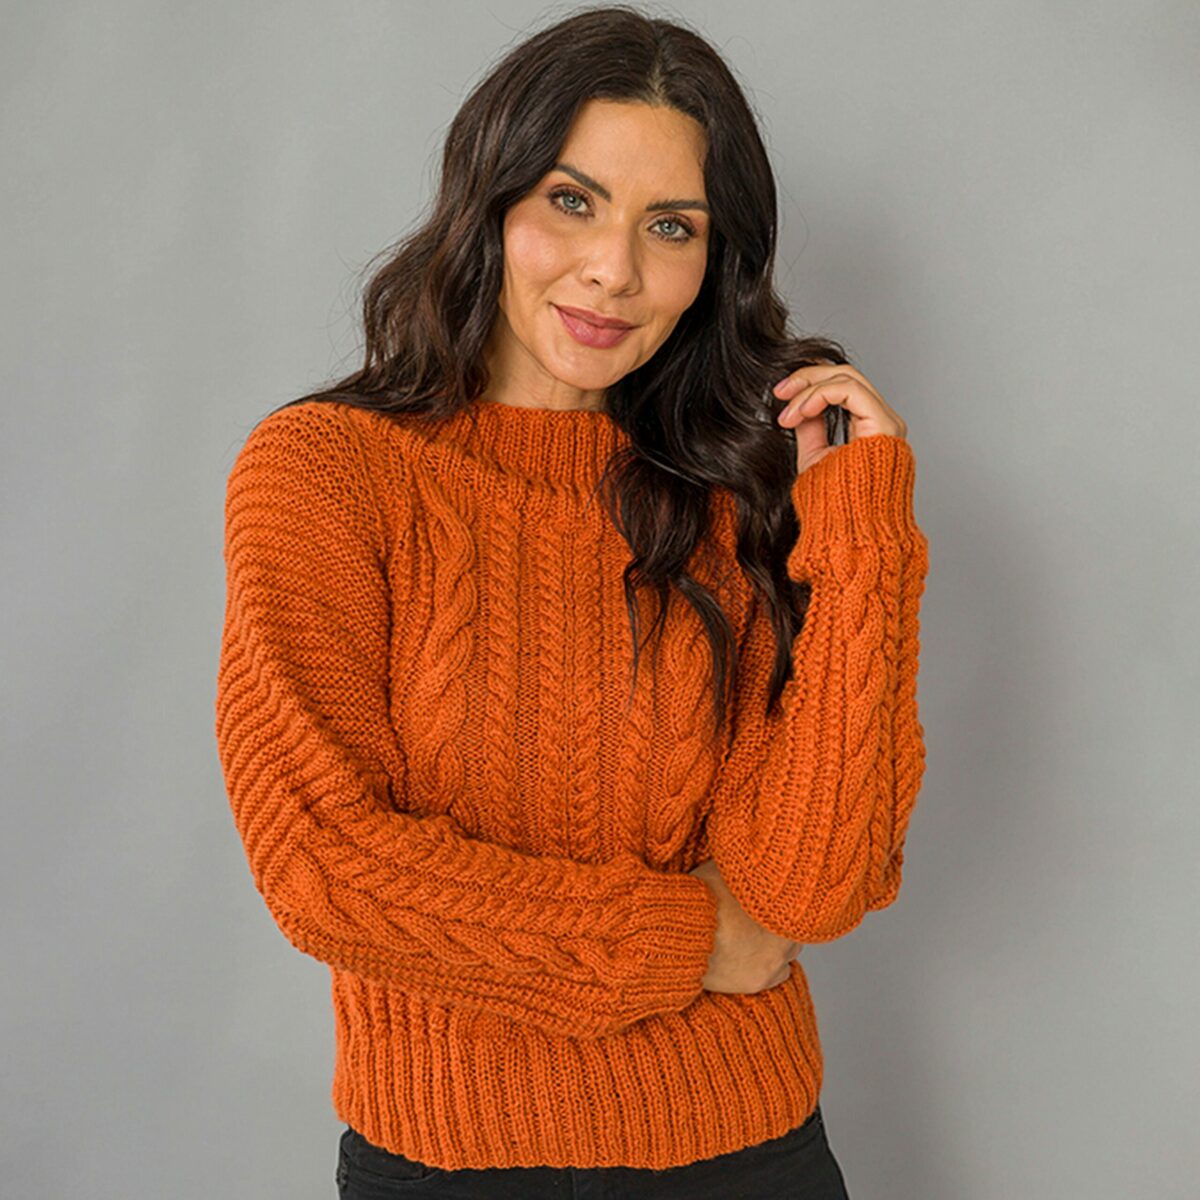 Оранжевый свитер спицами. Схема и выкройка